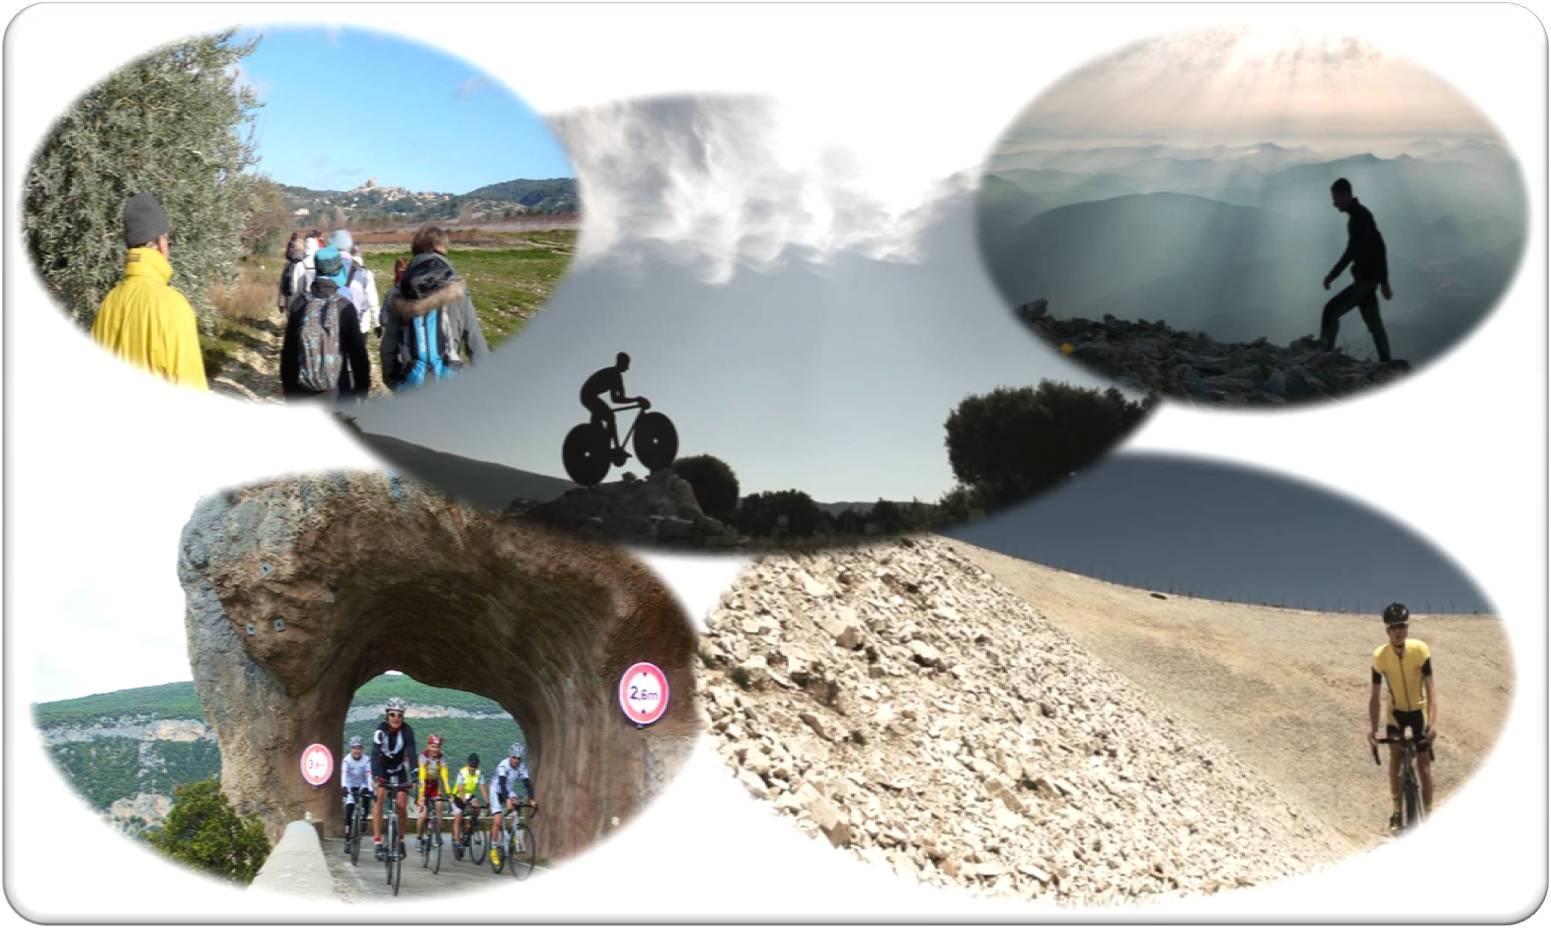 Συνάντηση συνεργασίας στην «Α.Ε.ΝΟ.Λ. Α.Ε.» με φορείς της περιοχής του Ολύμπου όσον αφορά τον περιπατητικό και ποδηλατικό τουρισμού στον Όλυμπο